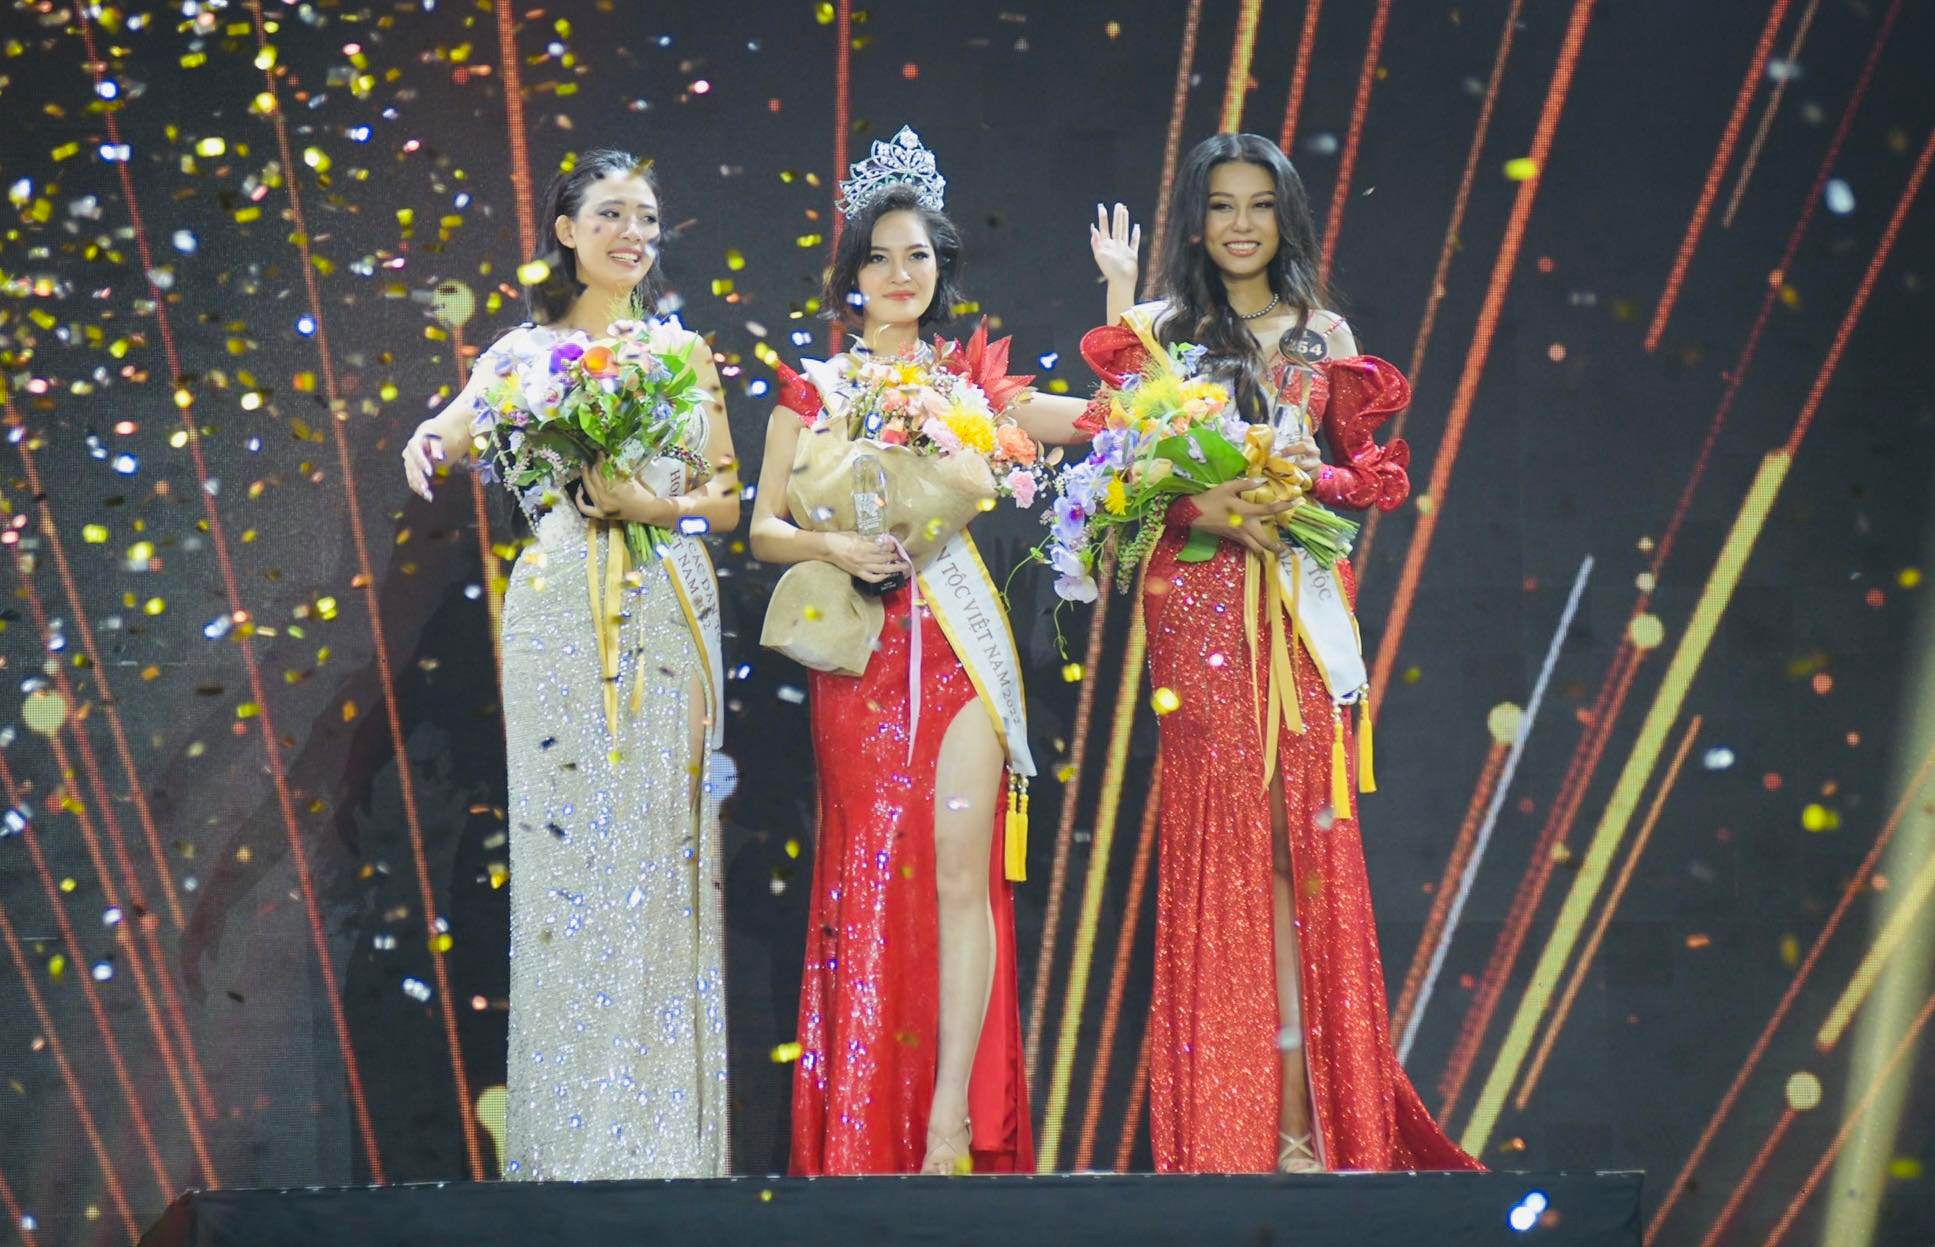 Nông Thuý Hằng (dân tộc Tày) đăng quang Hoa hậu các dân tộc Việt Nam 2022. Nông Thuý Hằng sinh năm 1999, dến từ Hà Giang, cao 1m72. 